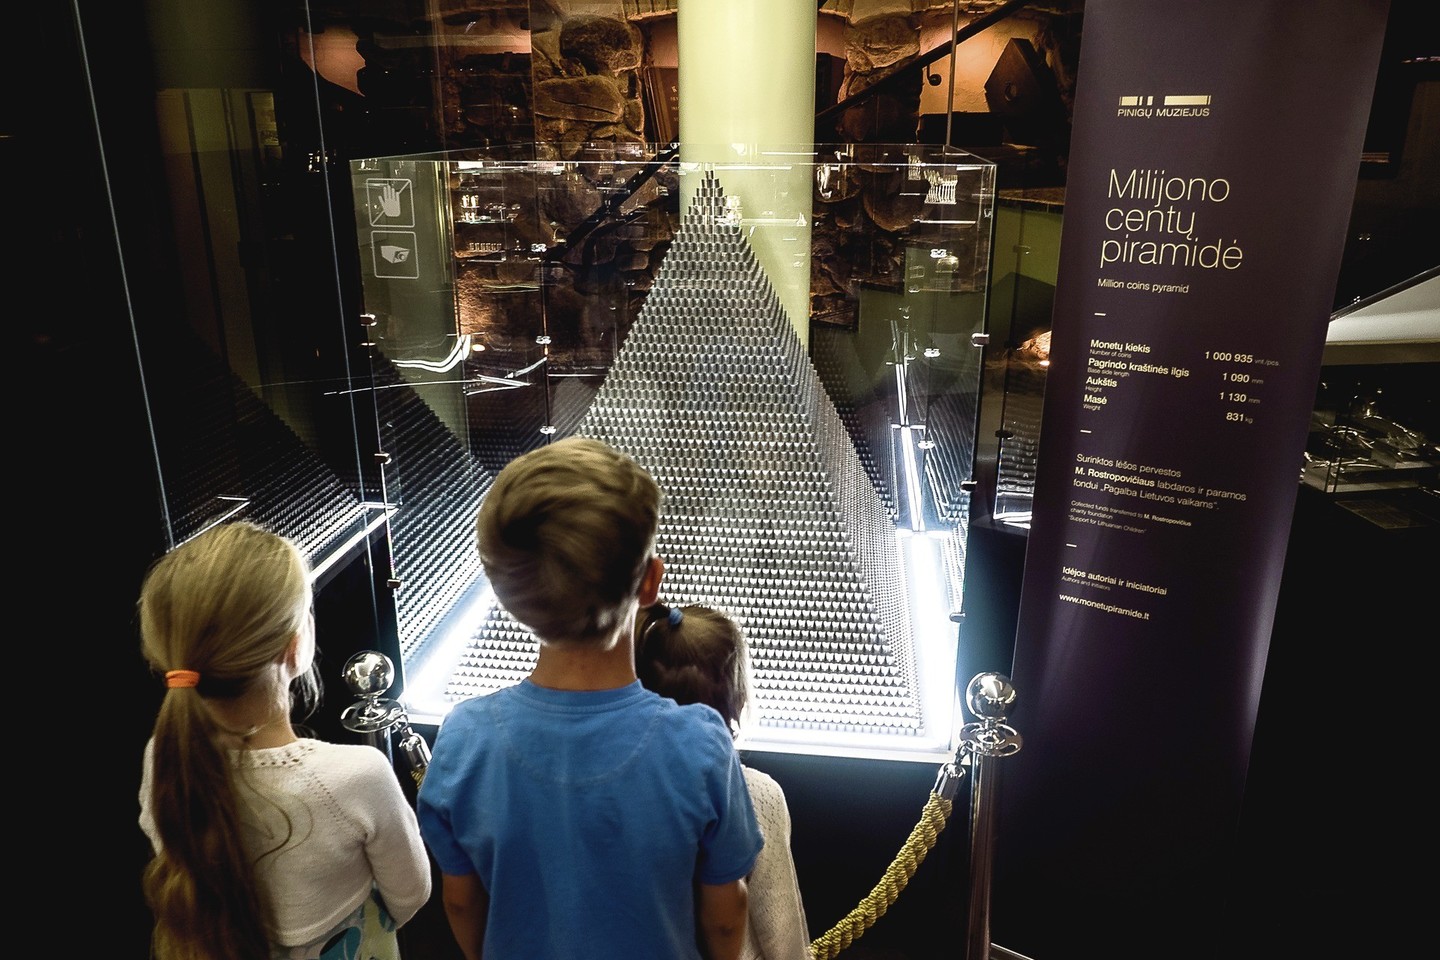 Pinigų muziejuje esanti piramidė iš daugiau kaip milijono centų yra rekordinė.